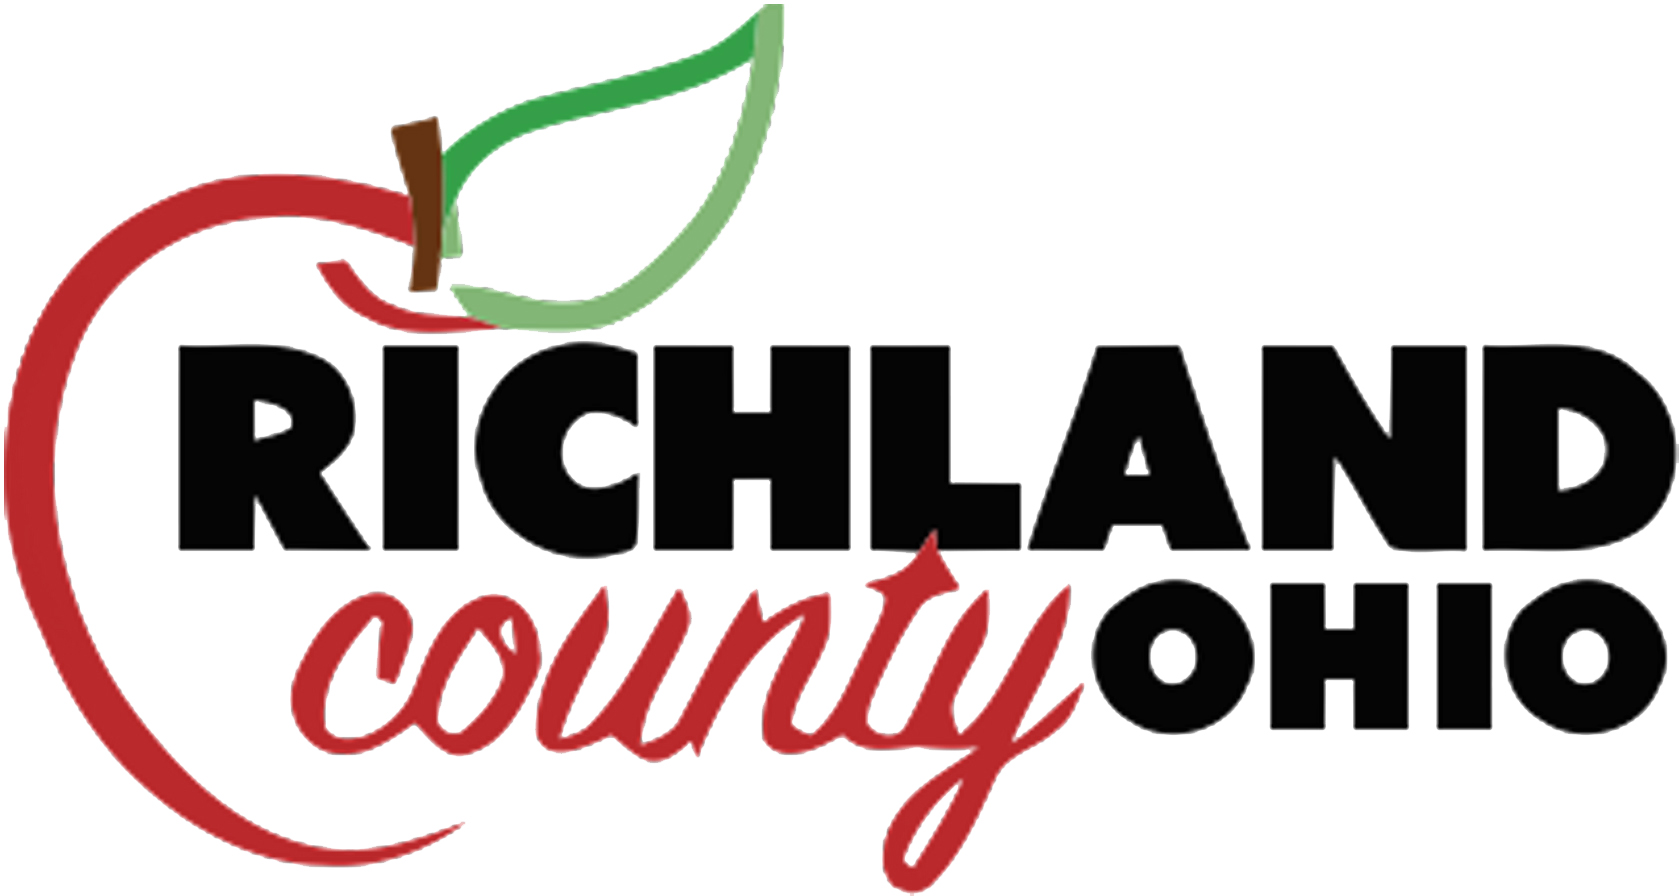 Richland County Ohio logo